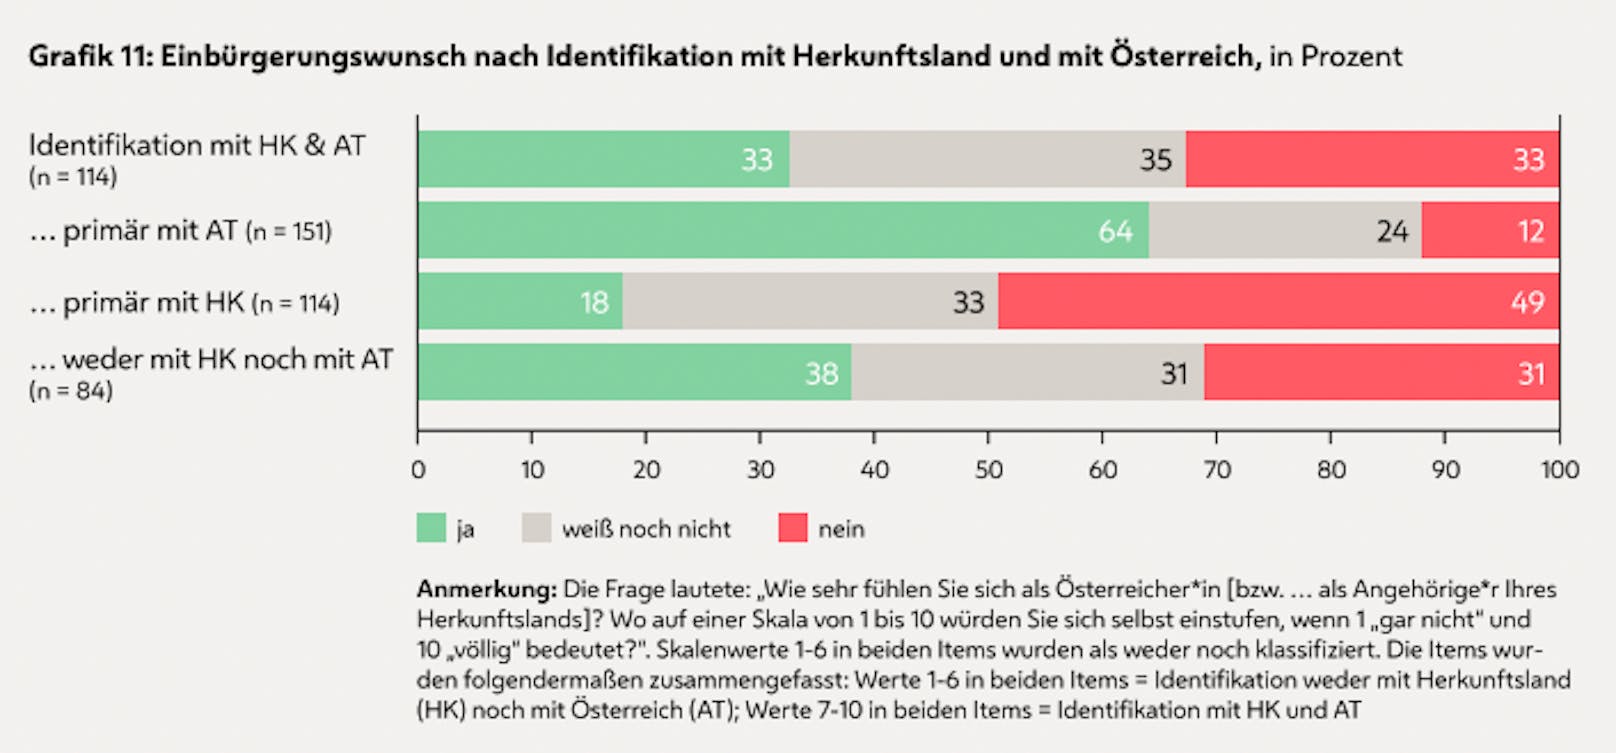 Ein Drittel der Befragten identifiziert sich mit Österreich und ihren Herkunftsländern.